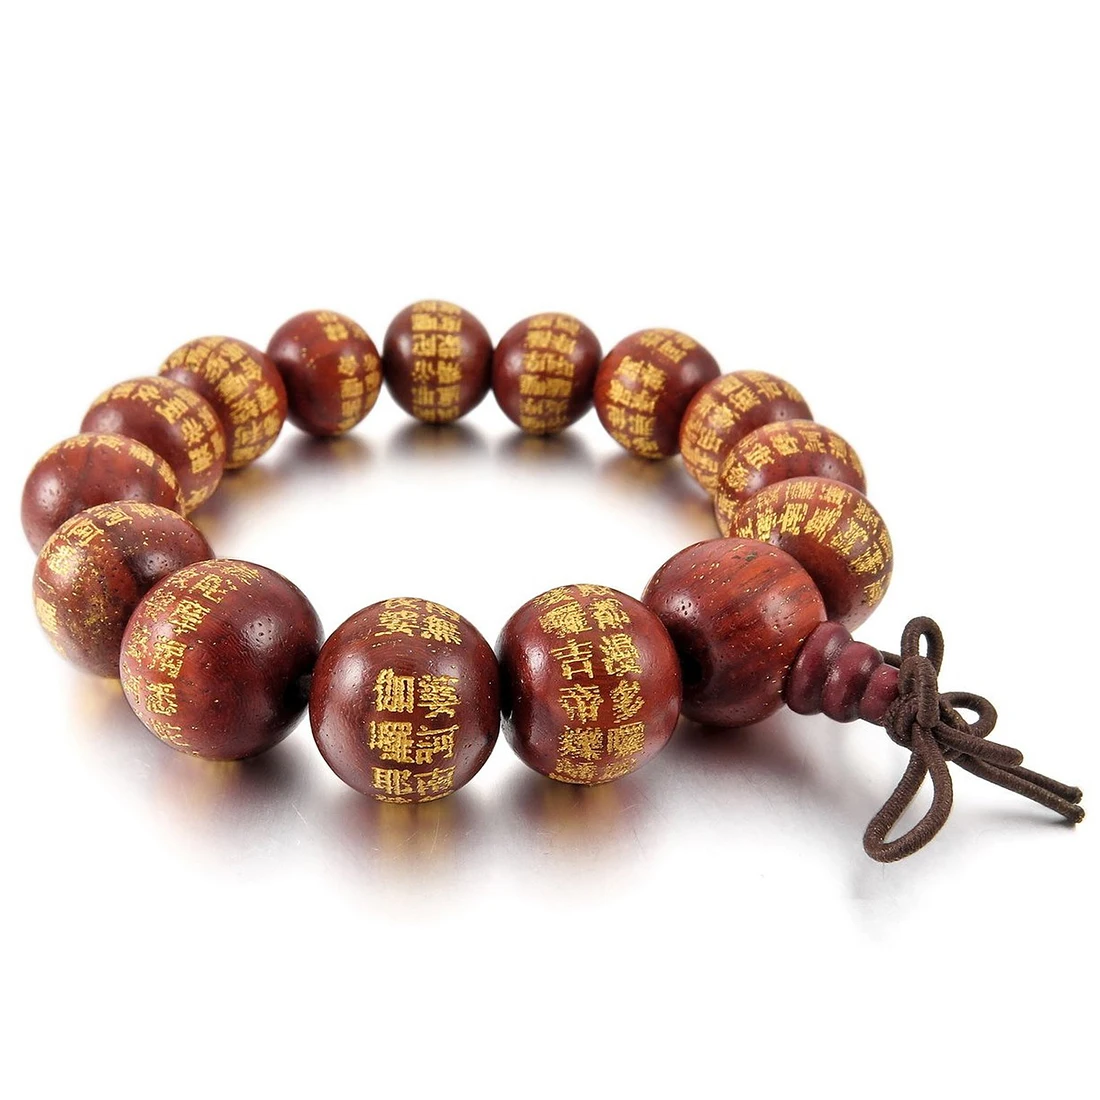 14 мм деревянный браслет, браслет на запястье с красными бусинами, тибетский буддистский молитвенный браслет из бисера Будды, китайский эластичный узел для мужчин, женщин